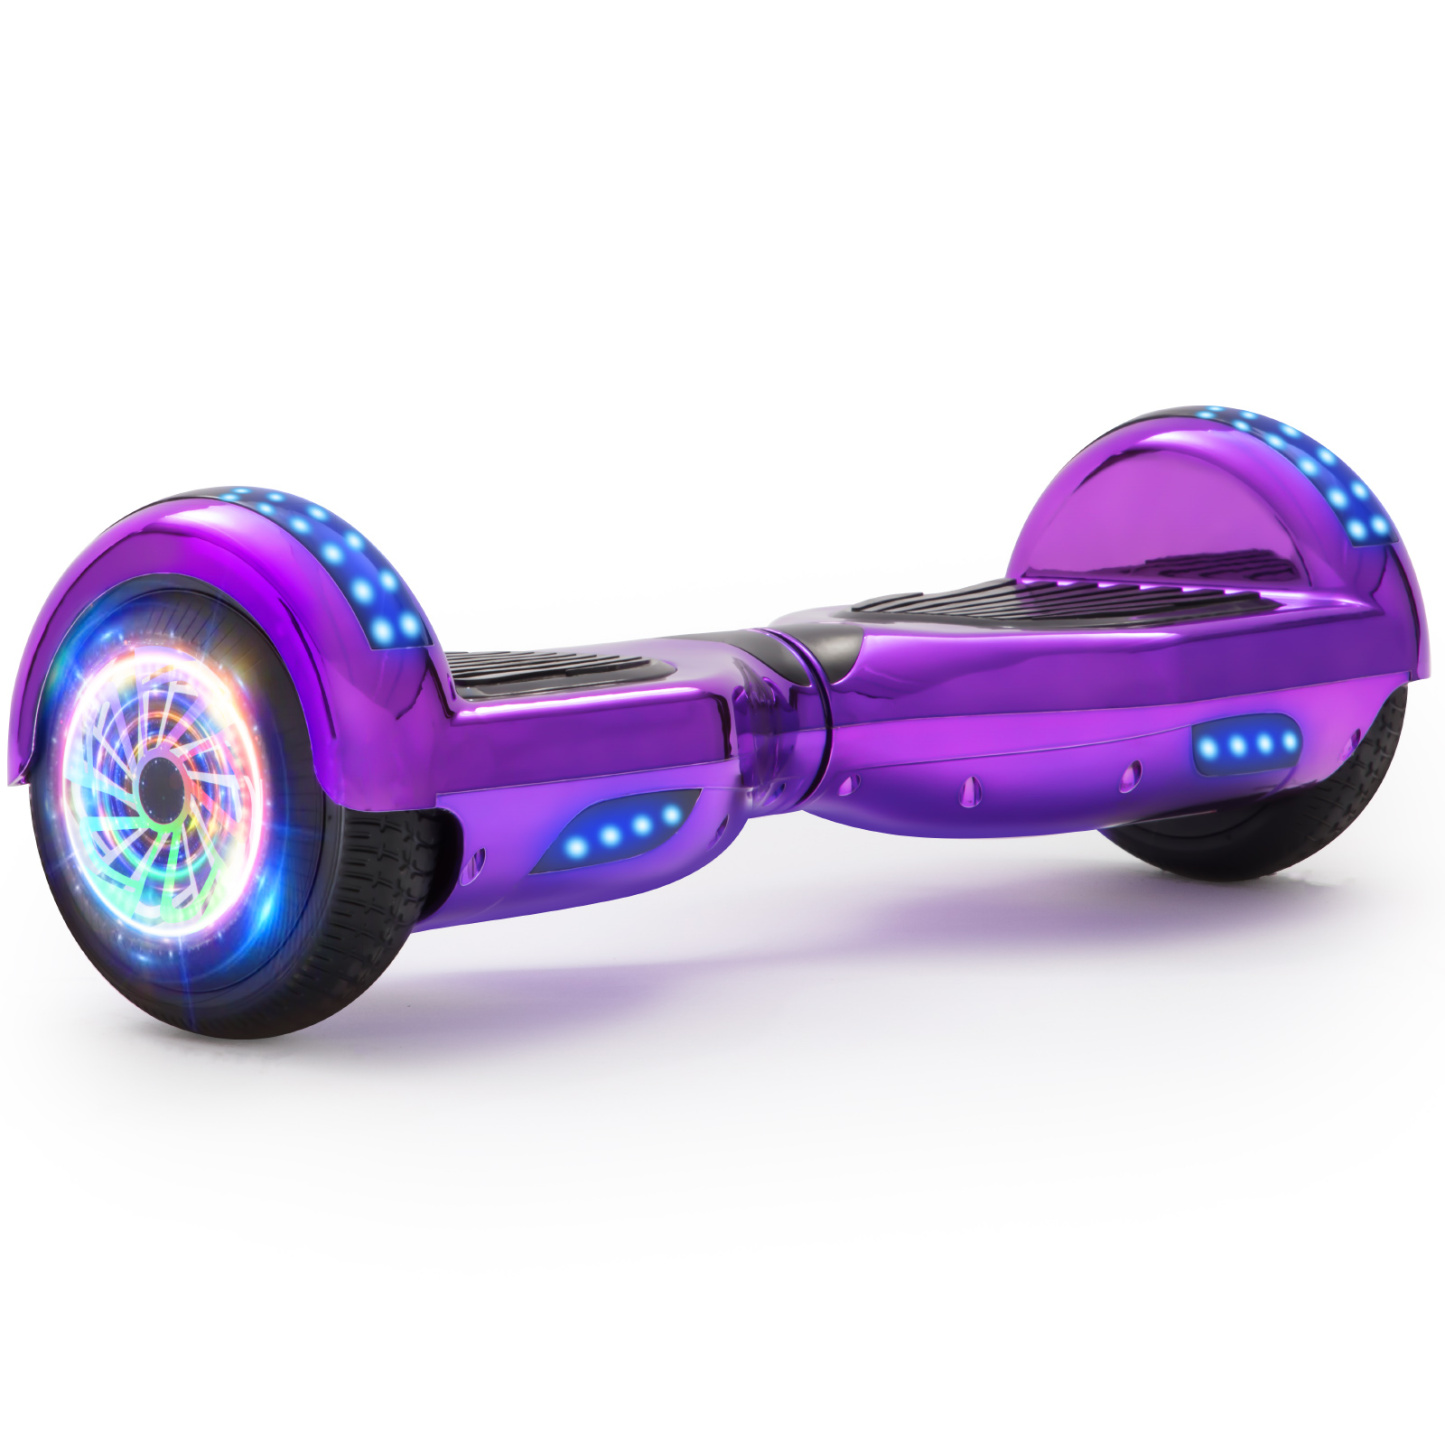 Neues 6,5" lila Hoverboard für Kinder, mit Bluetooth Musik Lautsprecher und Disco LED Licht - 500W 12km/h